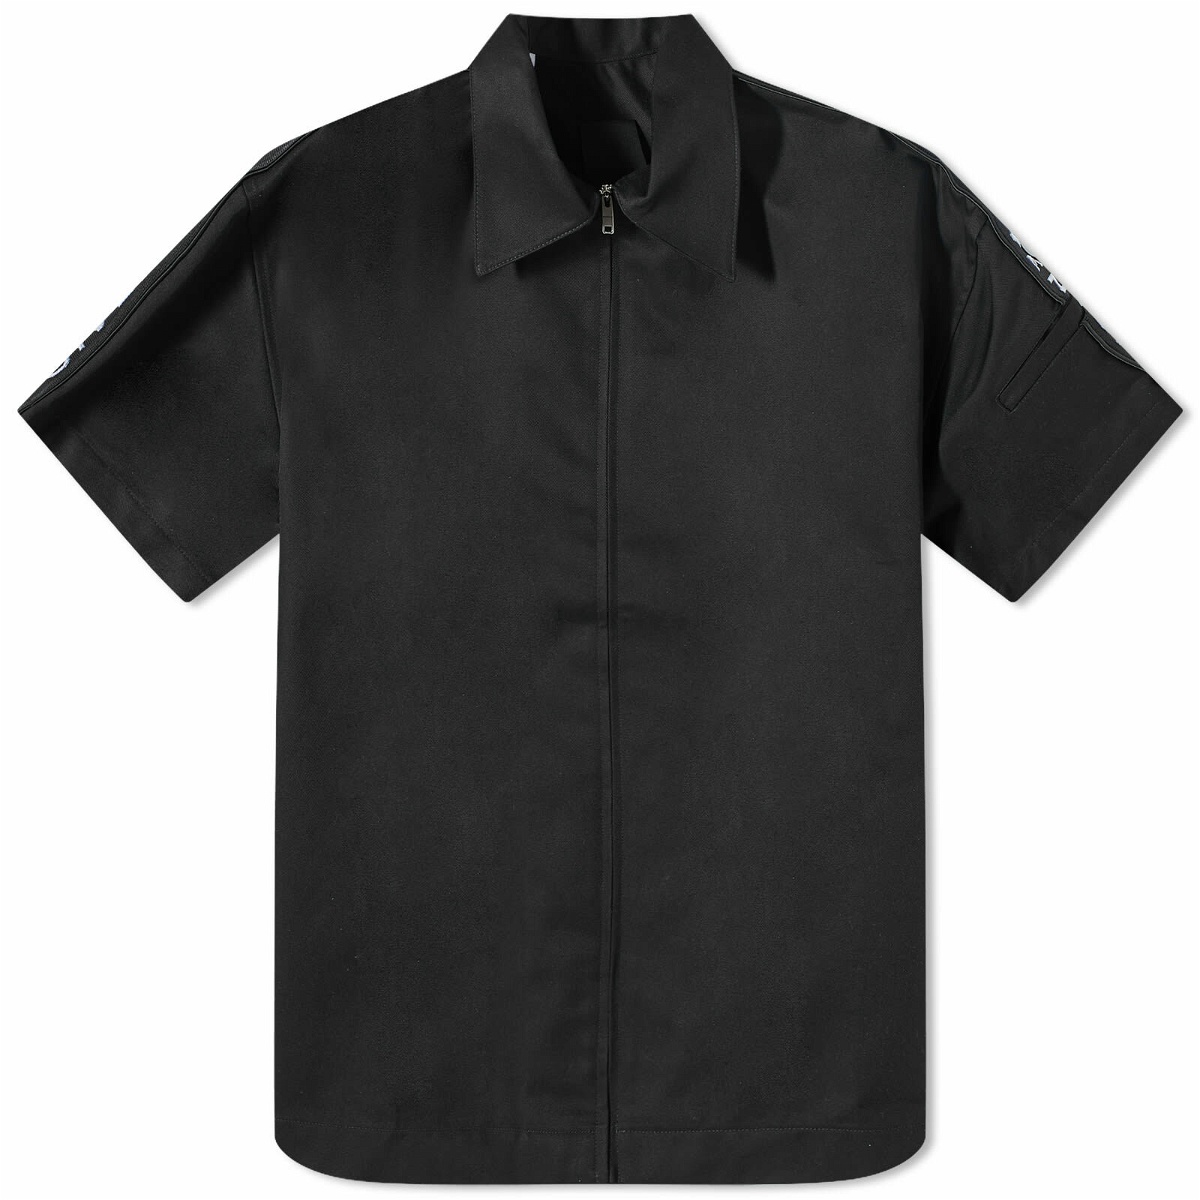 Givenchy Men's Logo Band Shirt in Black Givenchy